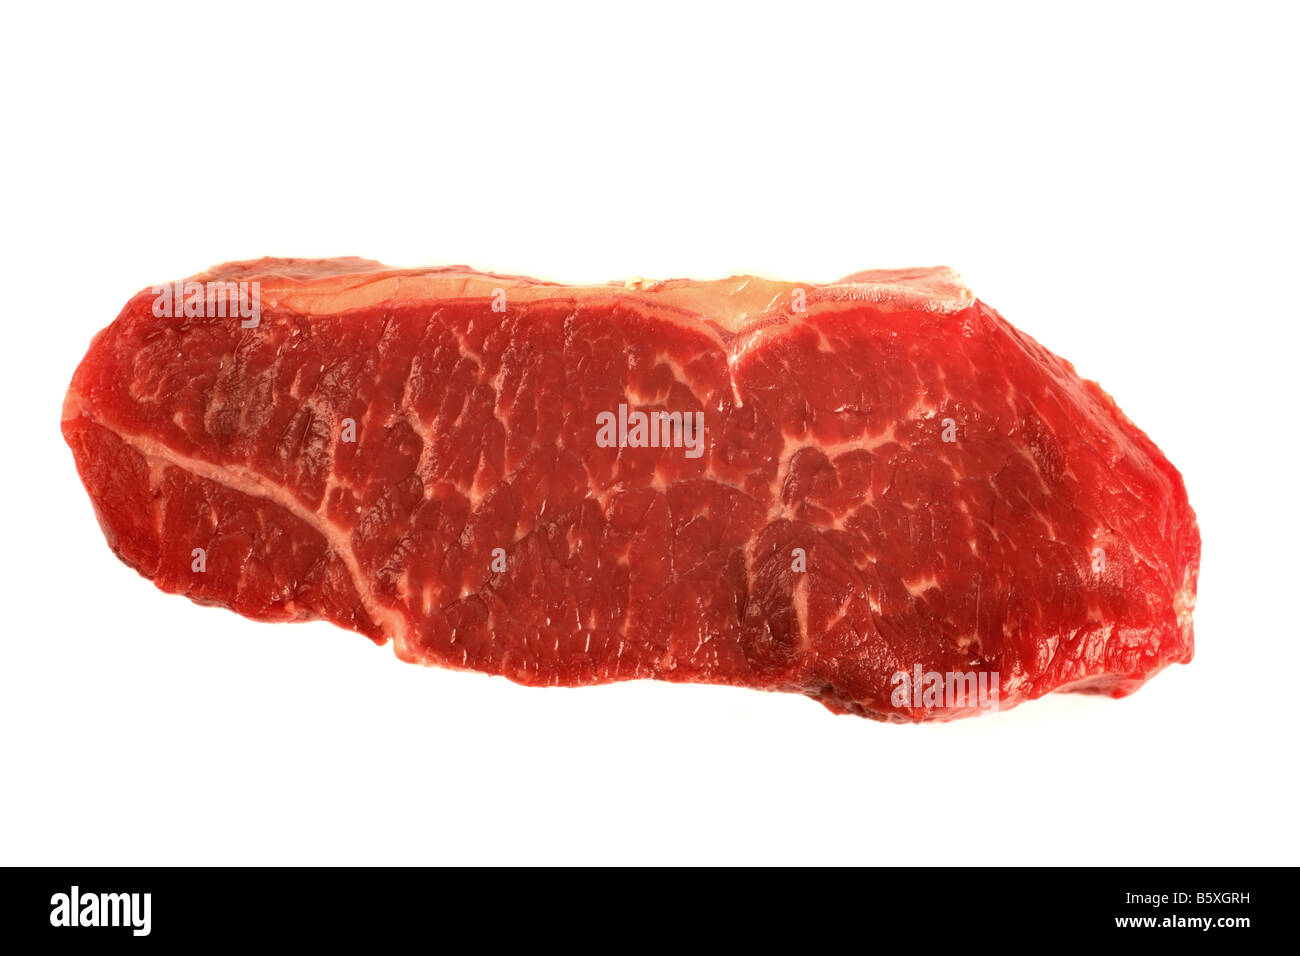 Un faux filet de boeuf steak isolated on white Banque D'Images